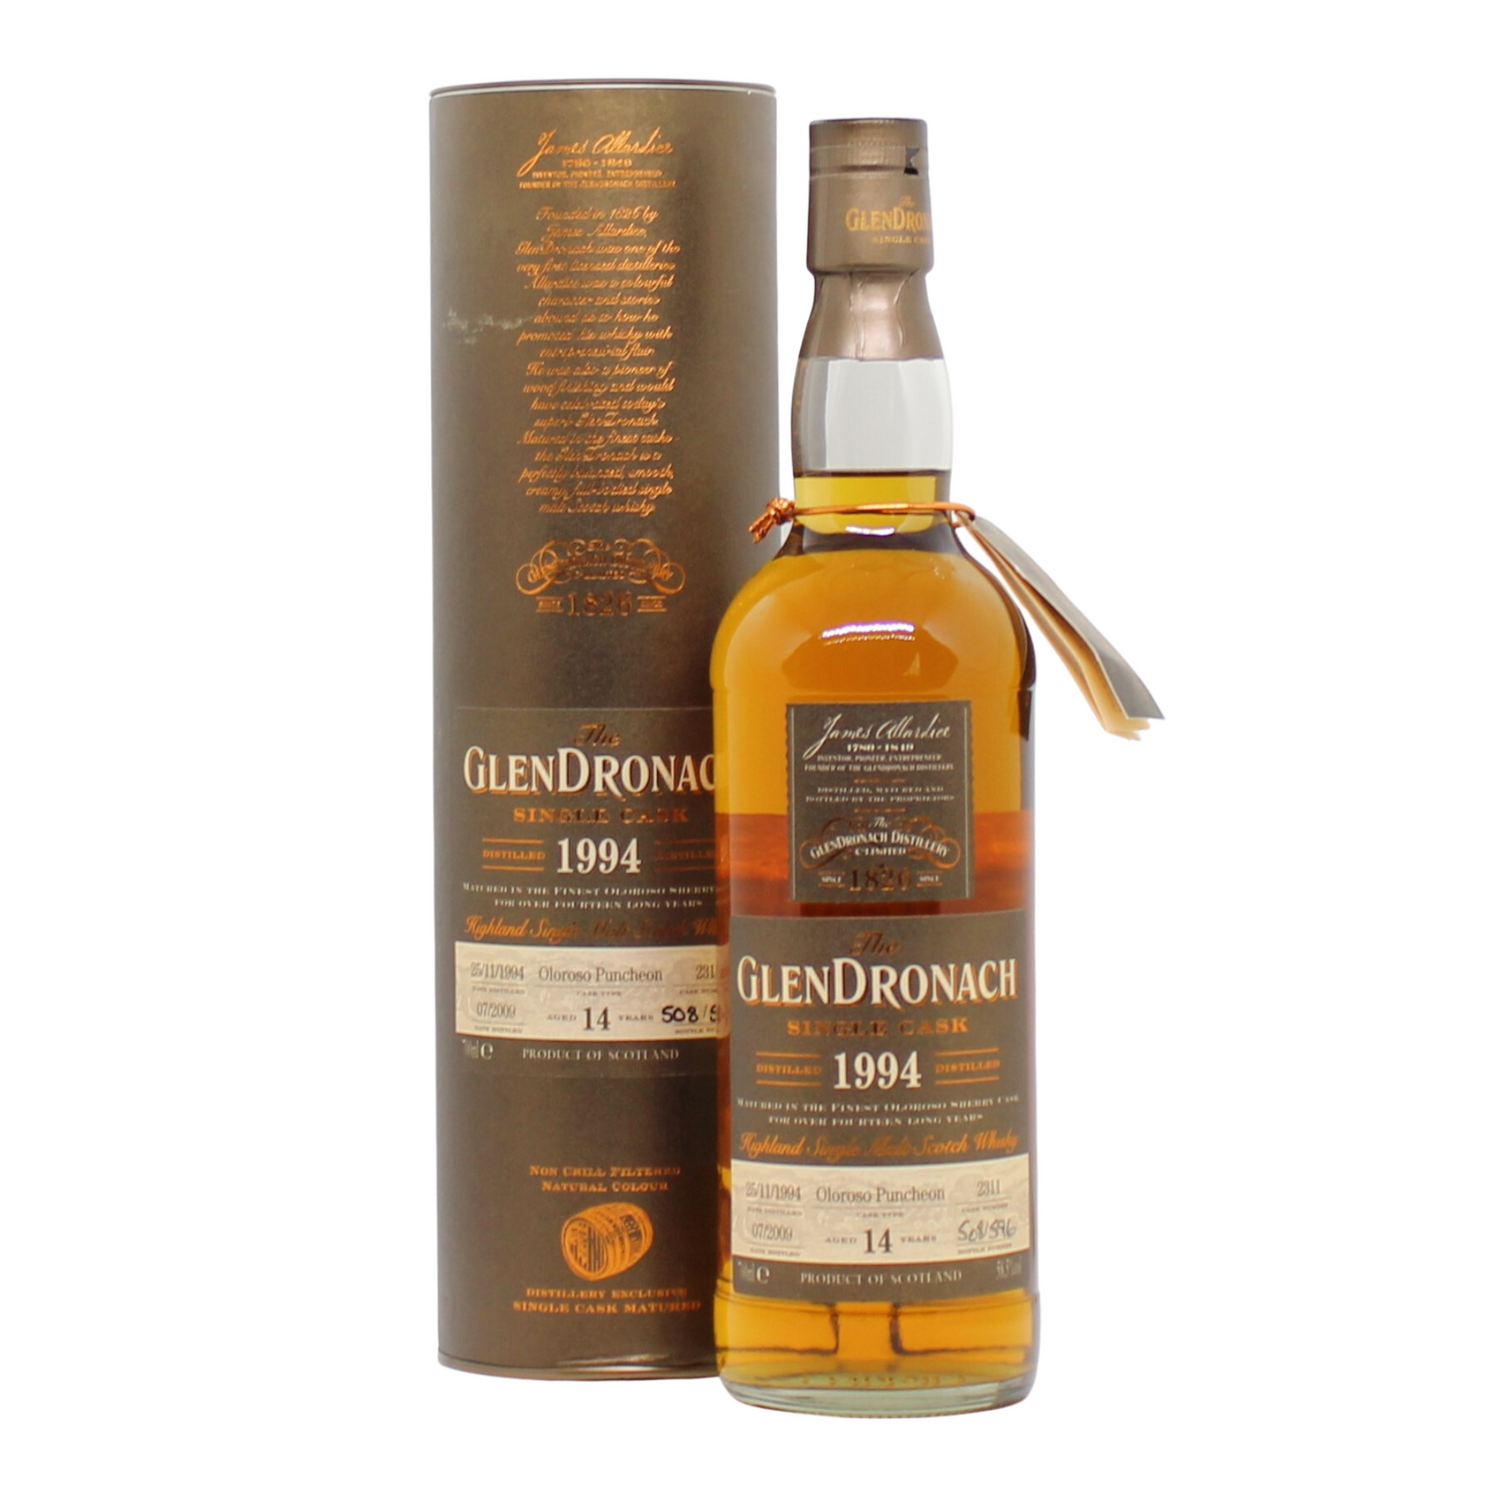 Glendronach 1994 Single Cask No.2311 Single Malt Scotch Whisky 14 Years Old